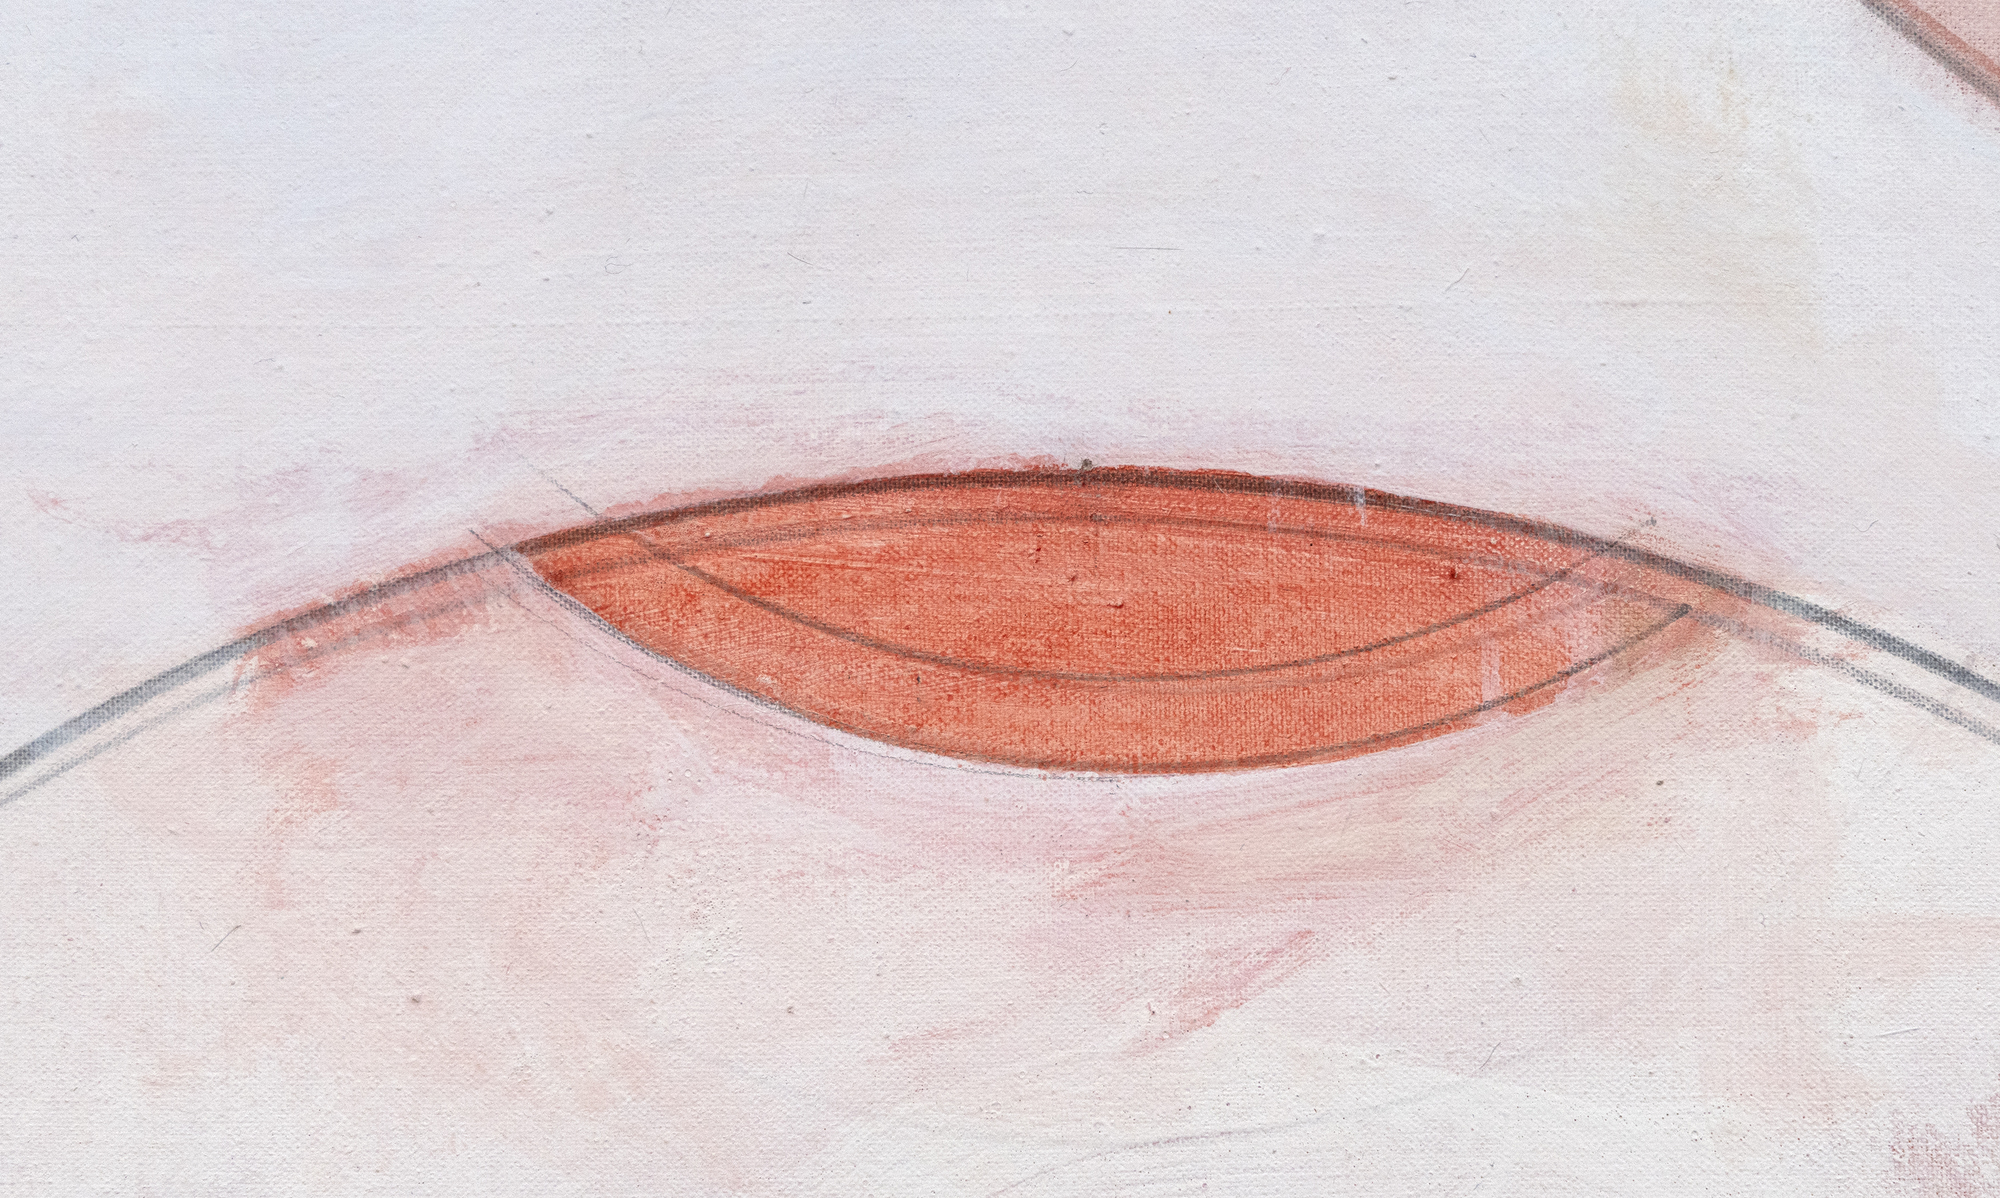 هاسل سميث - مقلة العين إلى مقلة العين - النفط على قماش - 46 × 46 في.